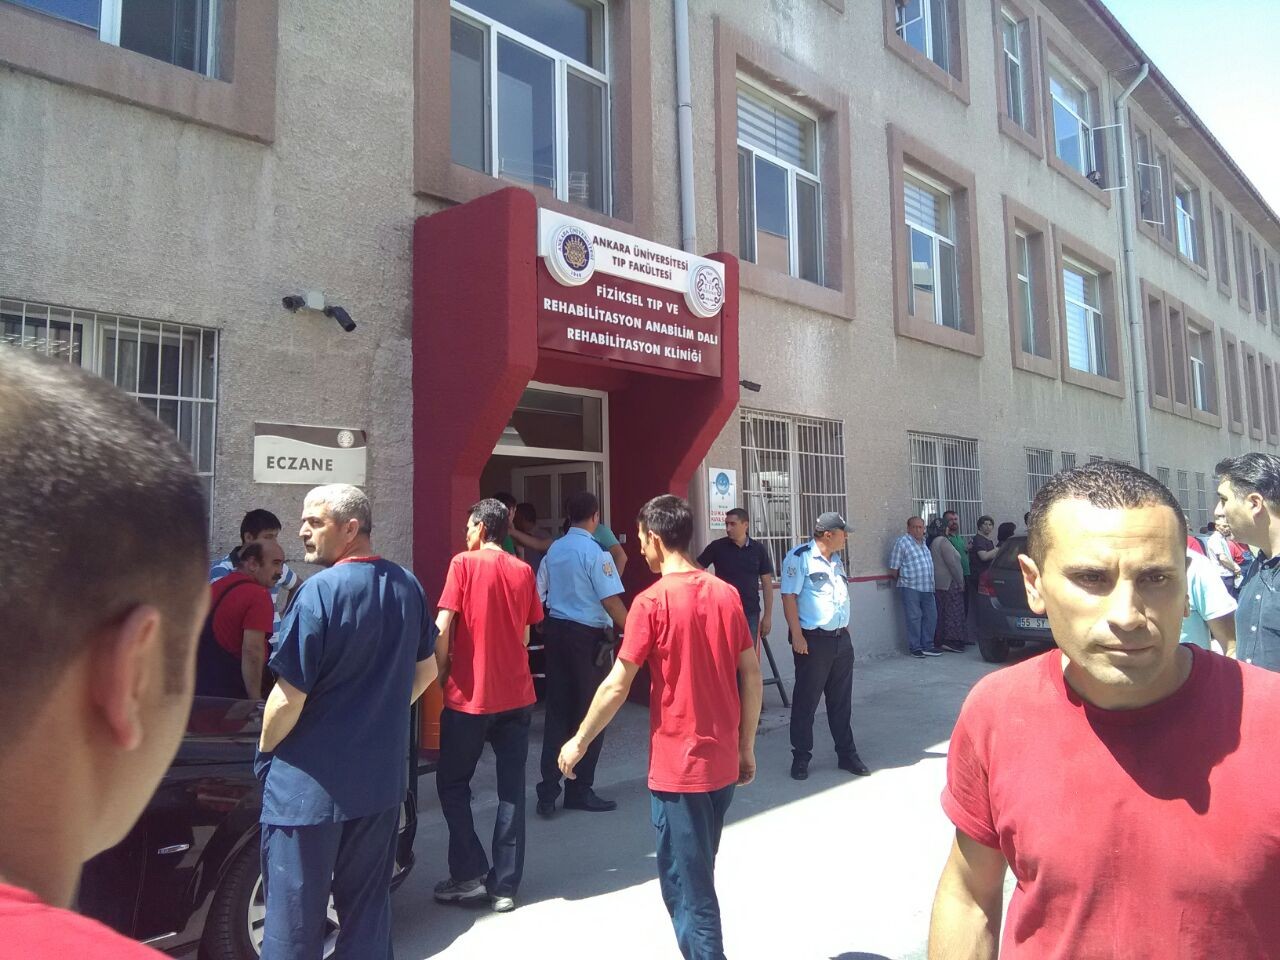 Ankara Üniversitesi Tıp Fakültesi'ndeki silahlı saldırı için üniversiteden açıklama